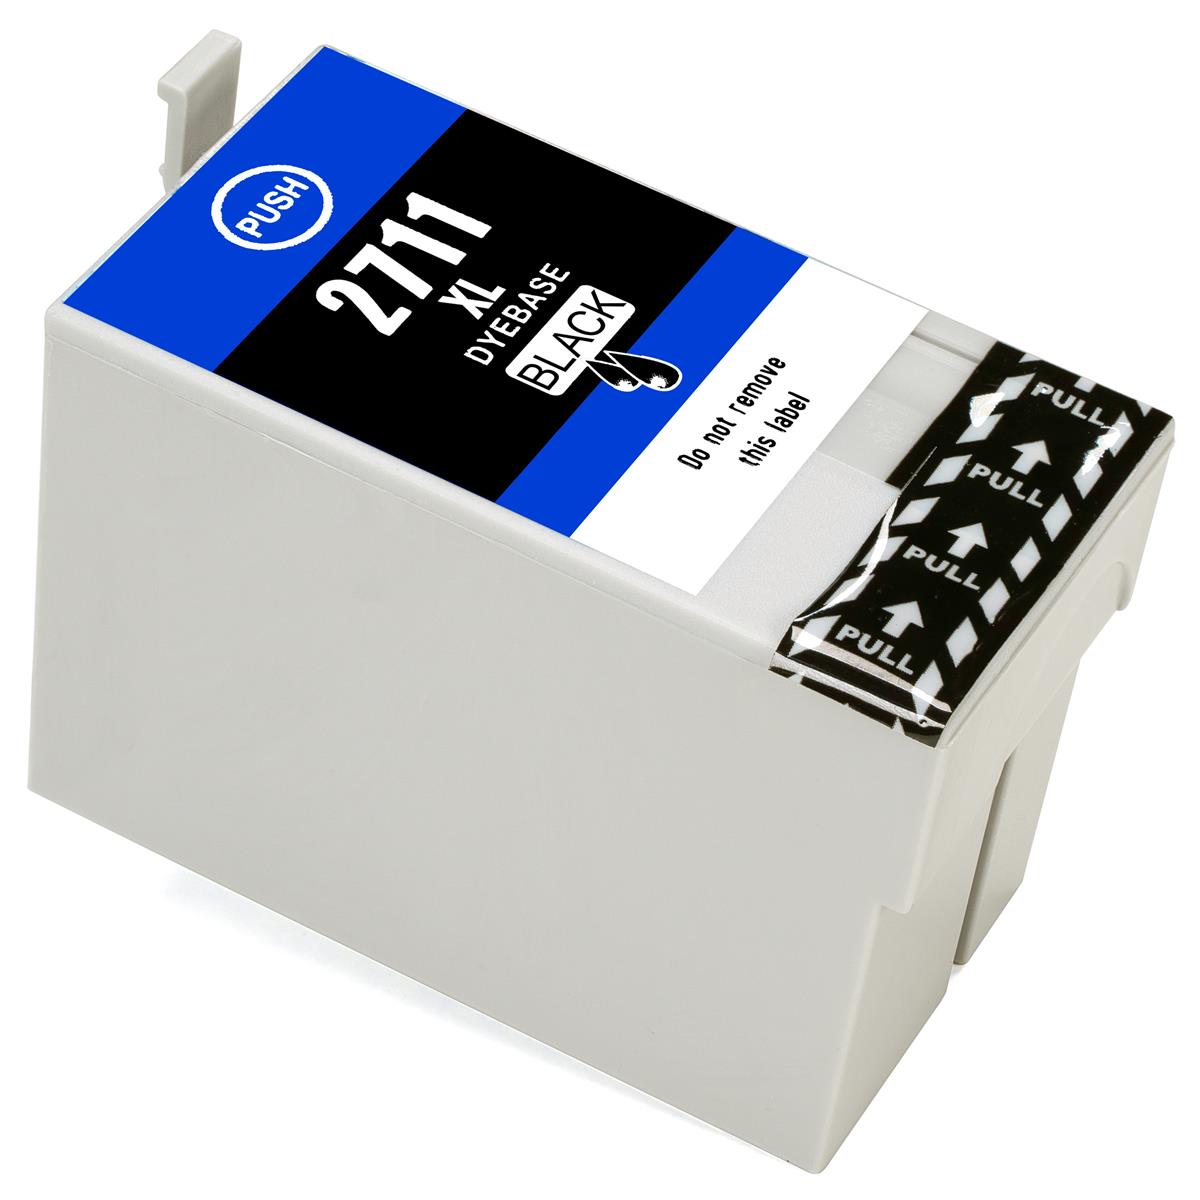 ESMOnline kompatible Druckerpatrone ersetzt Epson 27 XL Black (